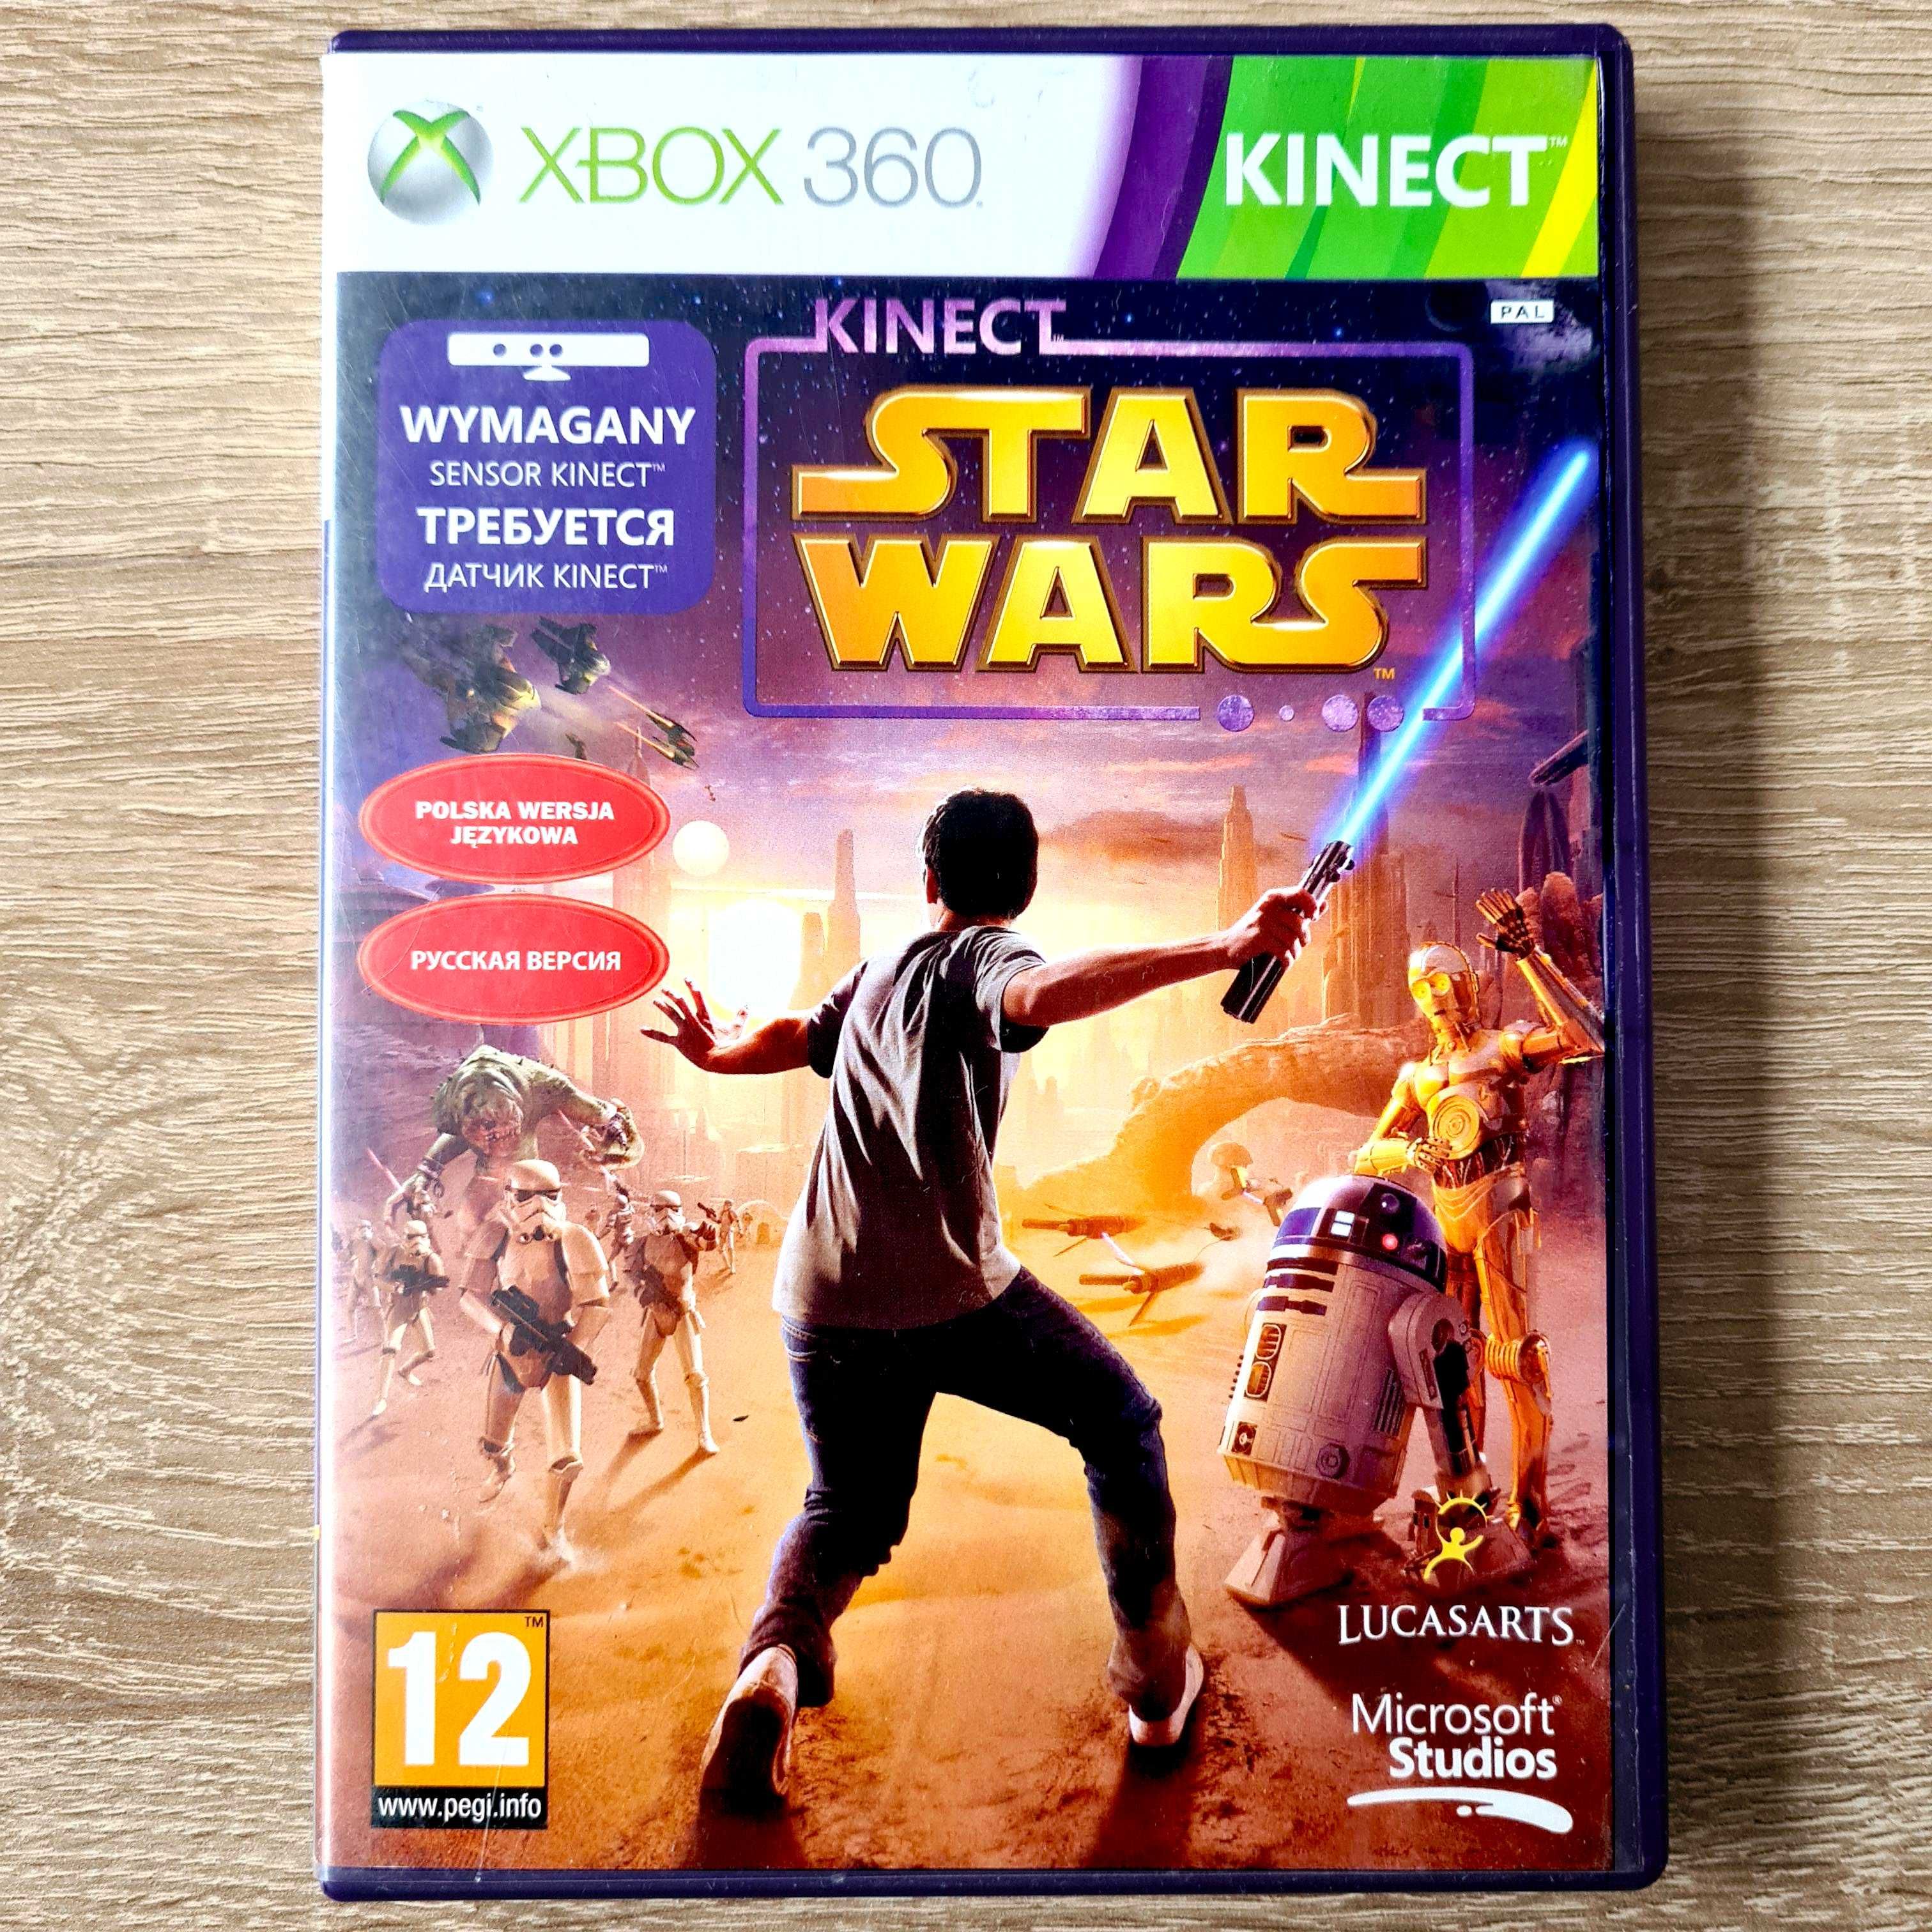 Kinect Star Wars PL Xbox 360 Polski Język Dubbing Pudełko